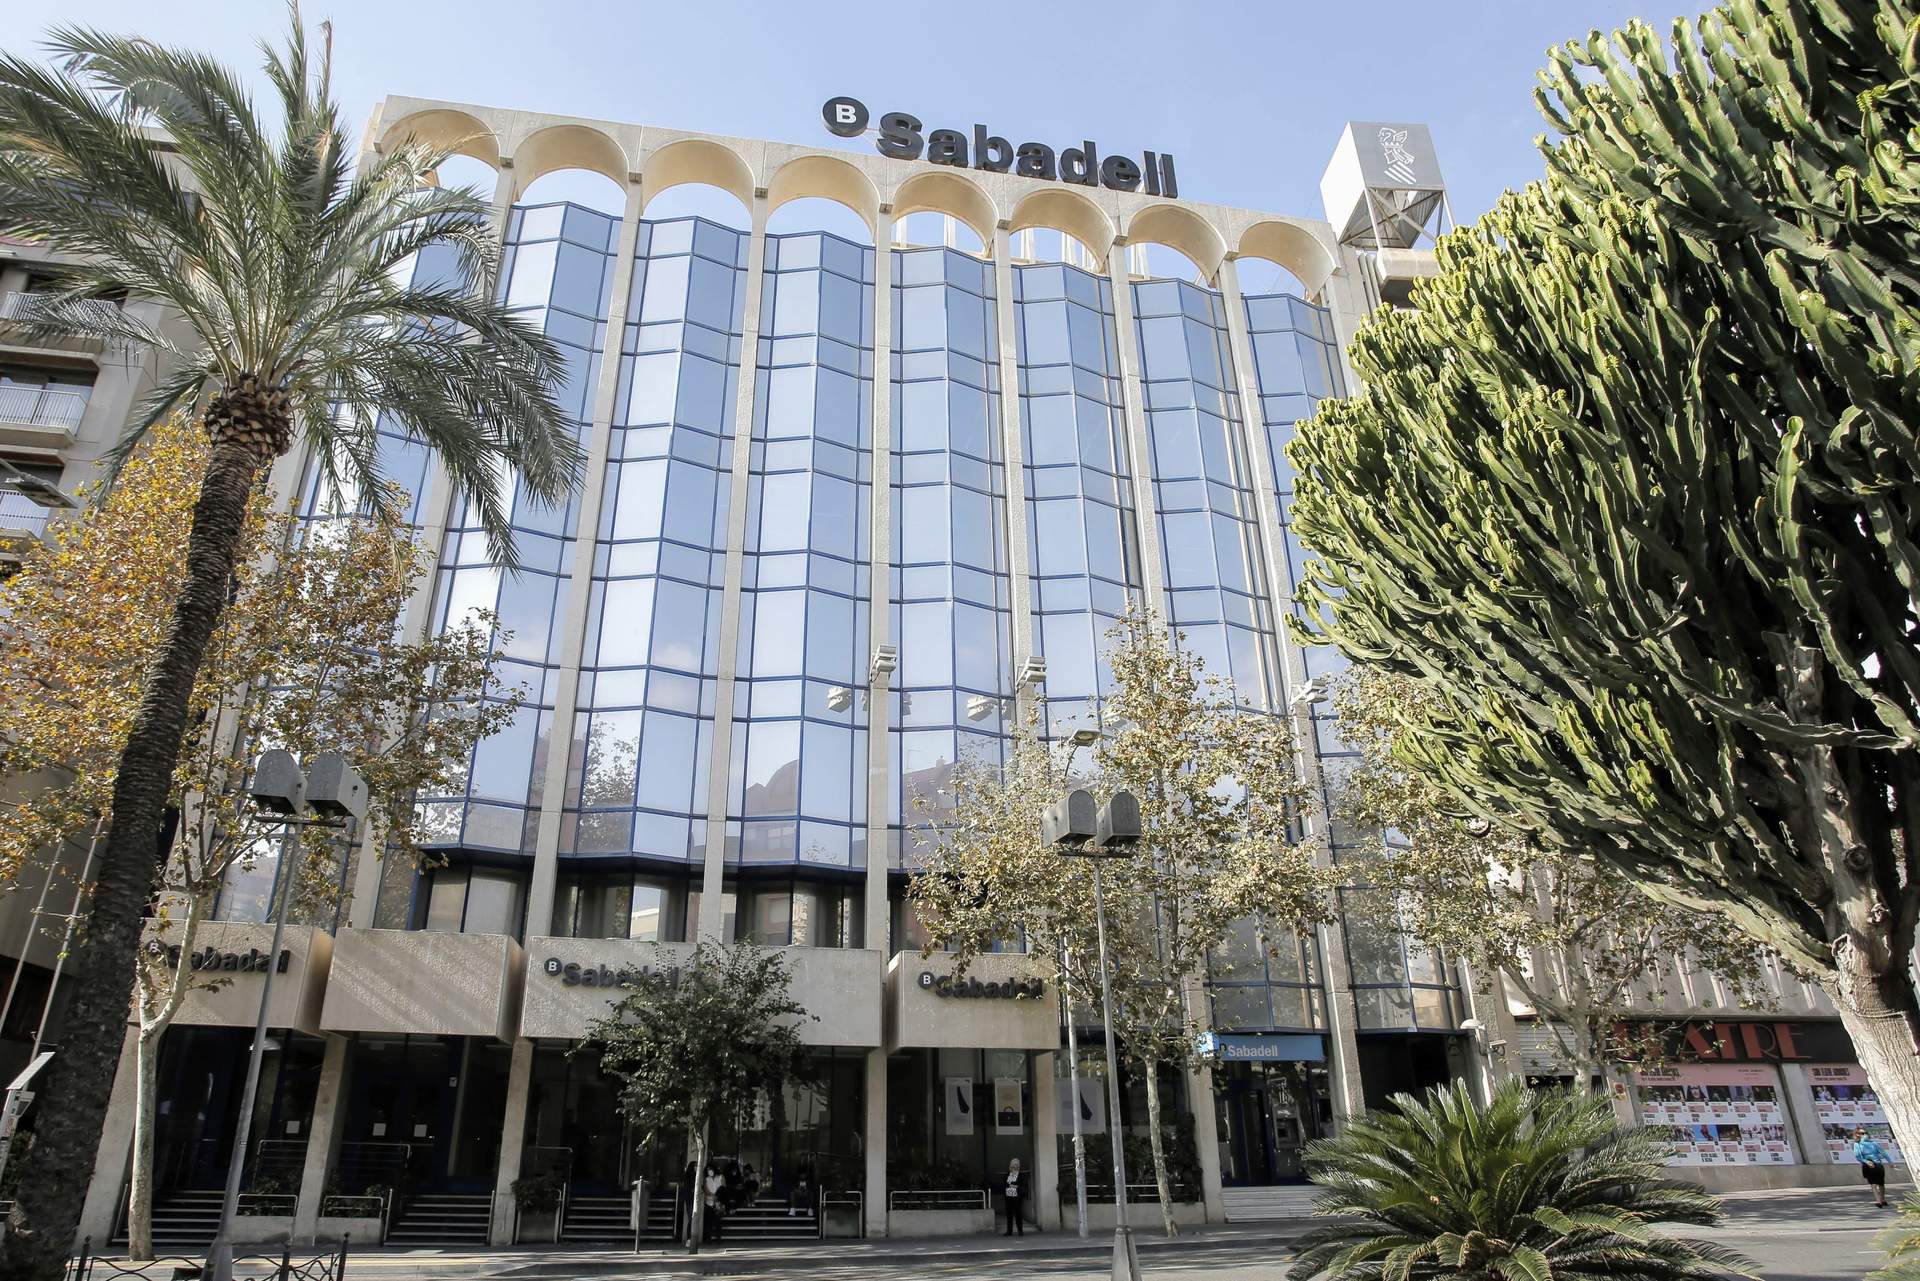 Oliu (Banco Sabadell) reitera que el banco no se plantea devolver la sede a Cataluña